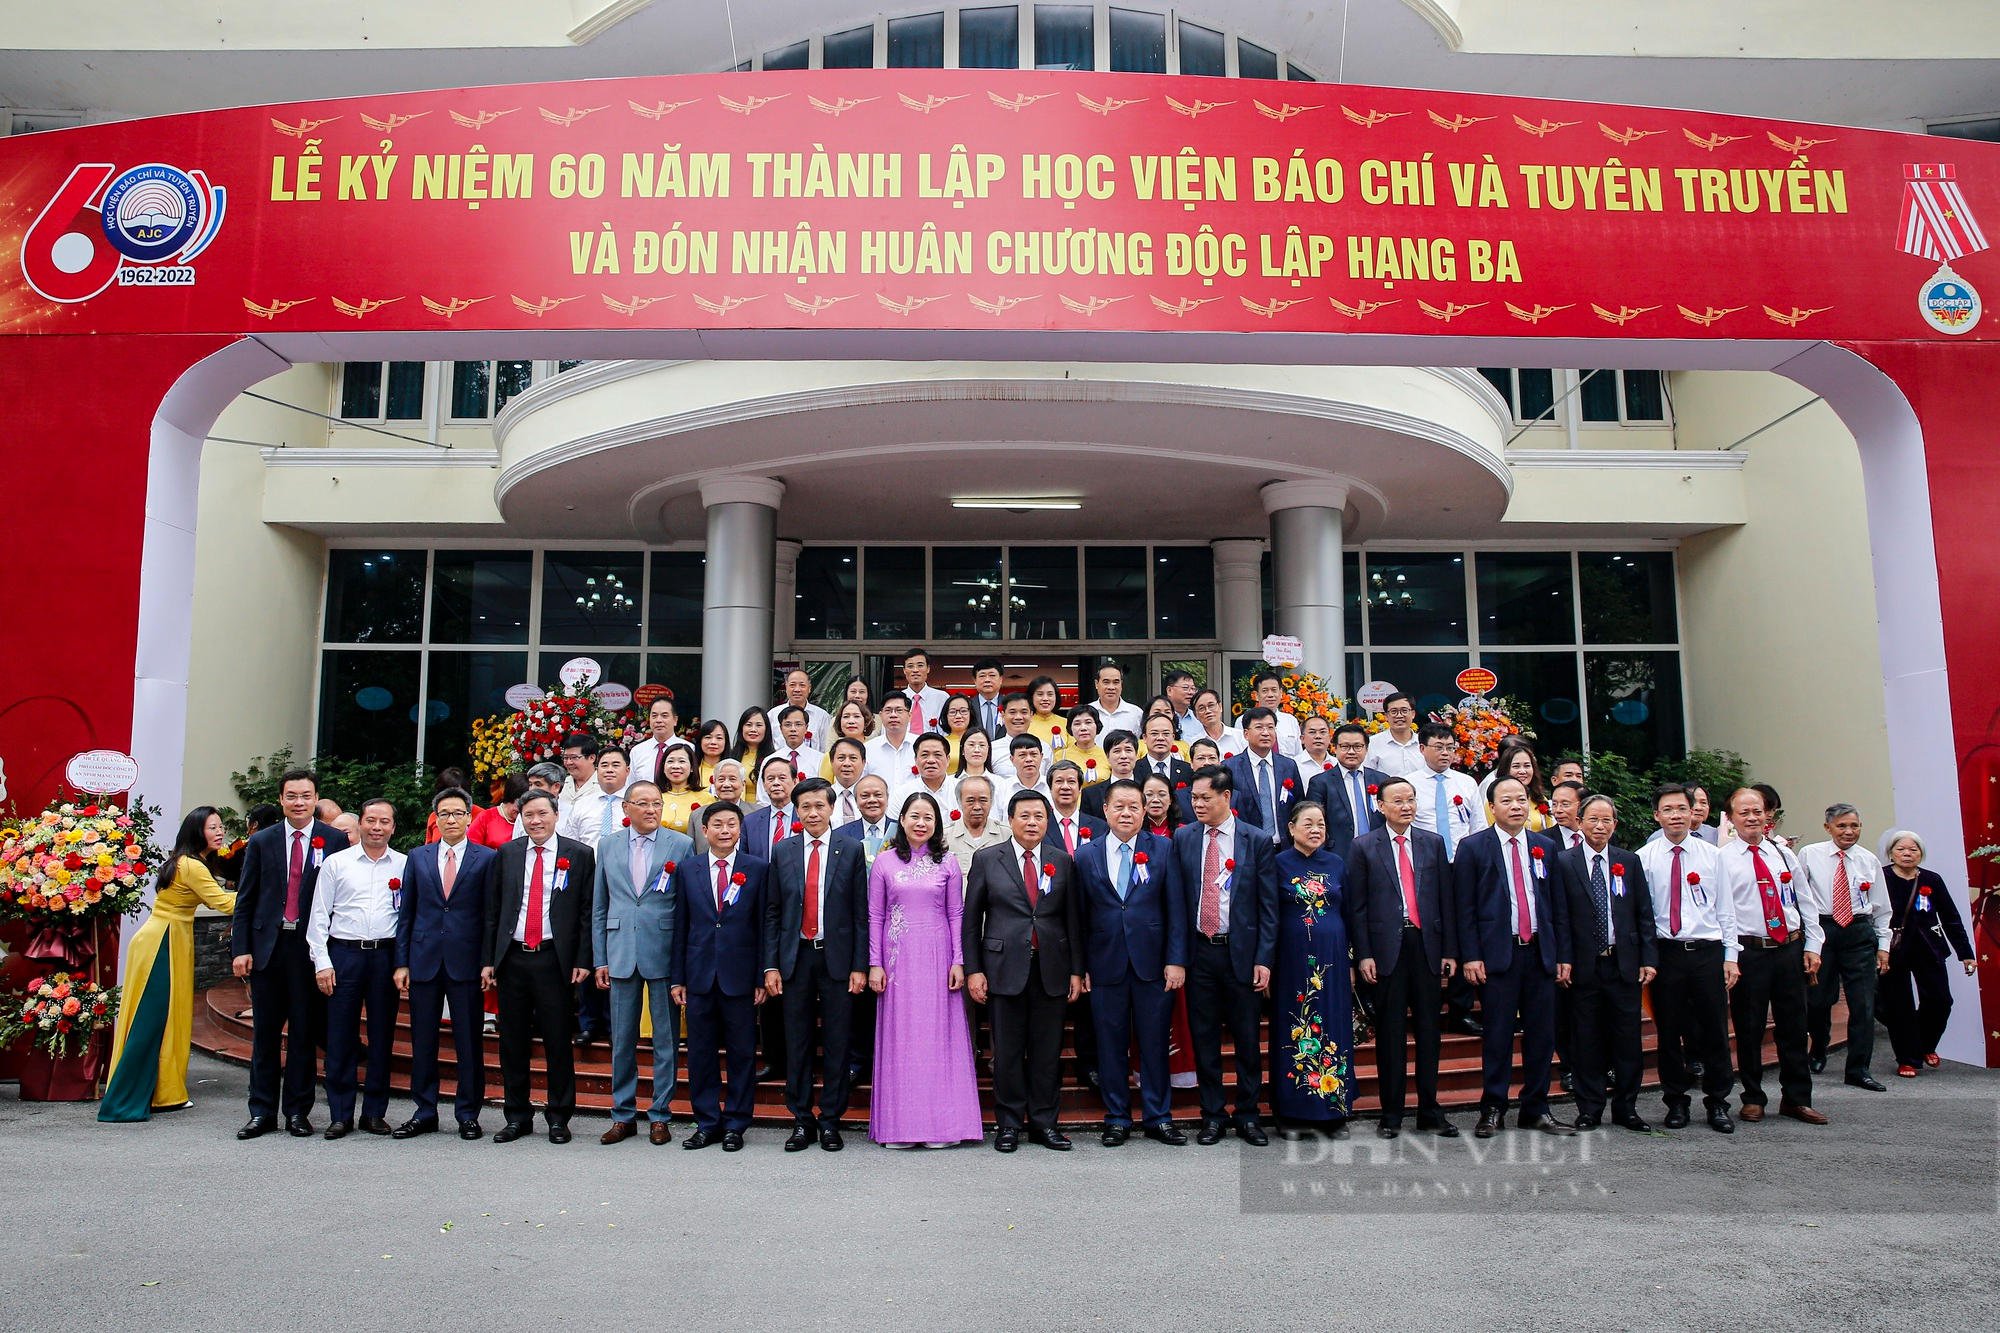 Lãnh đạo Đảng, Nhà nước tới dự Lễ kỷ niệm 60 năm thành lập Học viện Báo chí và Tuyên truyền - Ảnh 12.